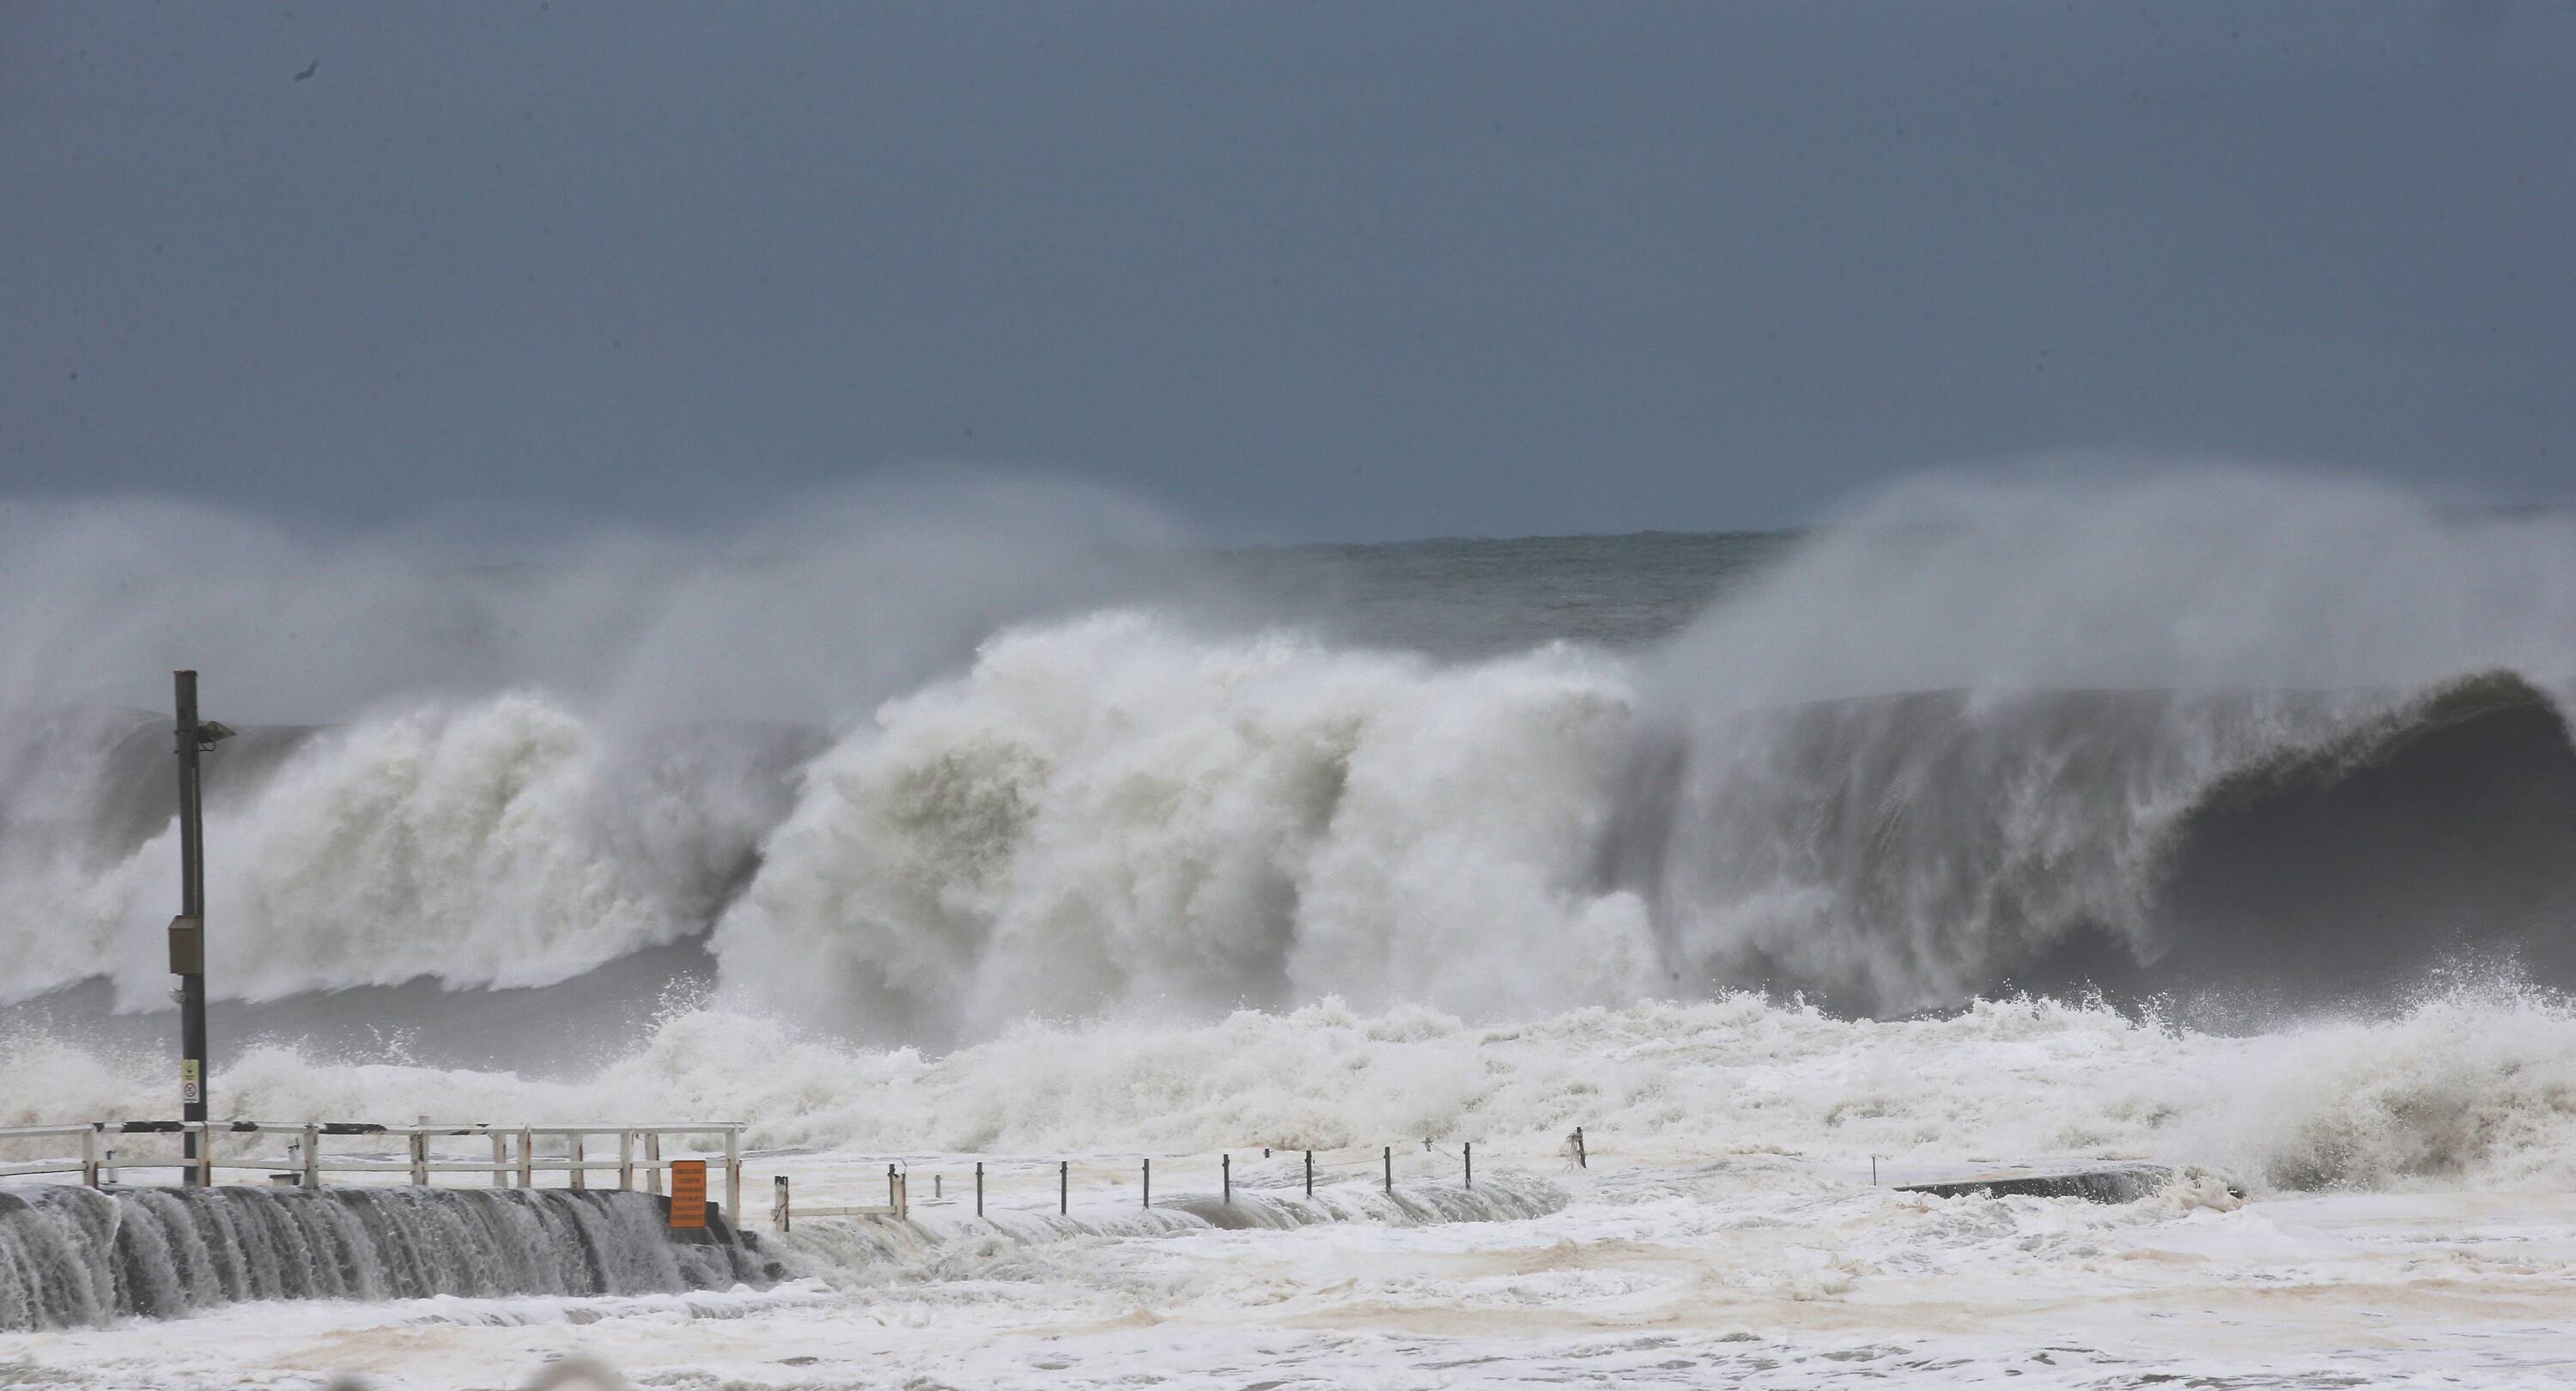 Sydney surfers brave monster waves as huge swell batters coastline